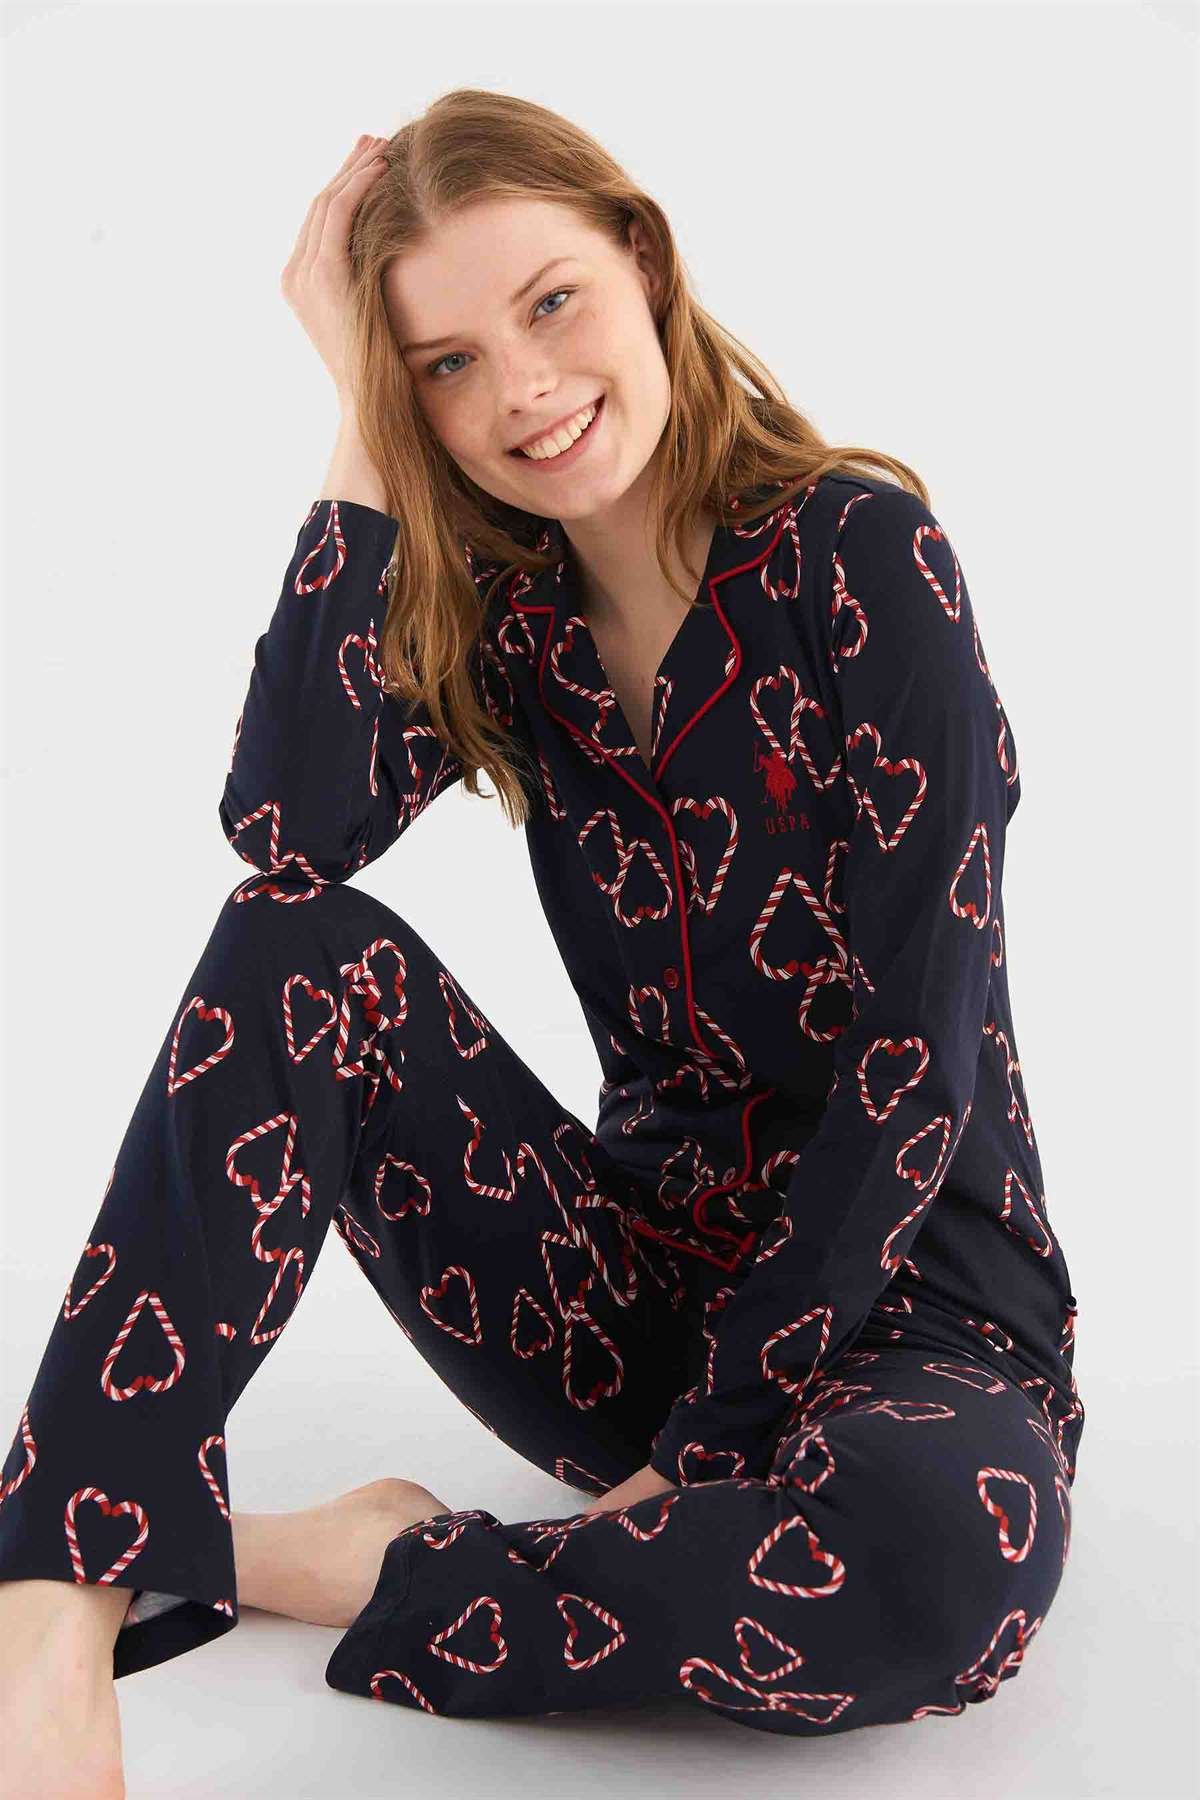 U.S. POLO Assn.Kadın Lacivert Pijama Takımı indirimli fiyat seçenekleri ile  modcollection.com.tr 'de Pijama kategorisinde sizi bekliyor!